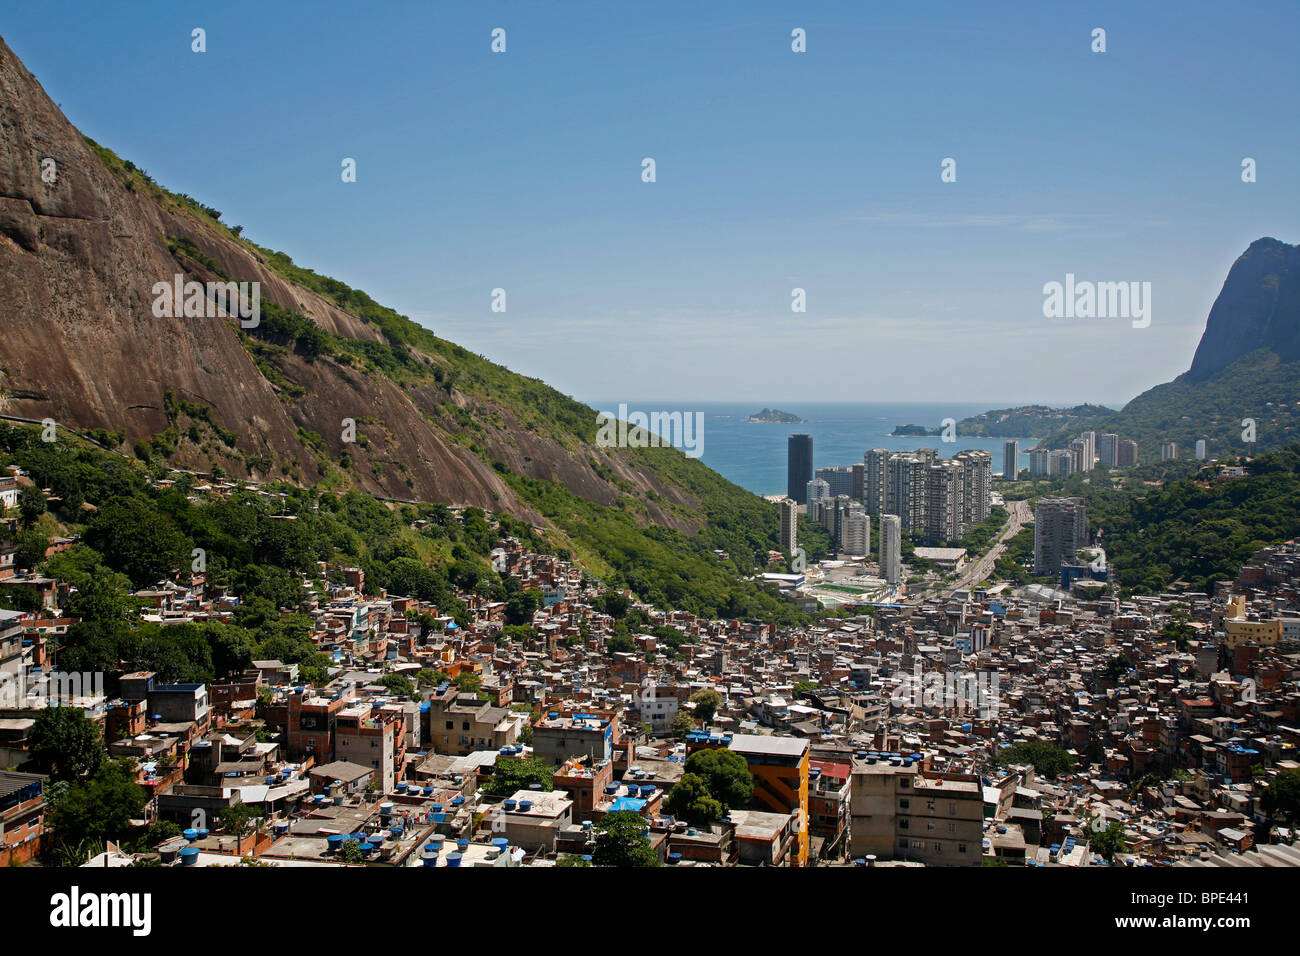 View down from the top of Rocinha favela, Rio de Janeiro, Brazil. Stock Photo